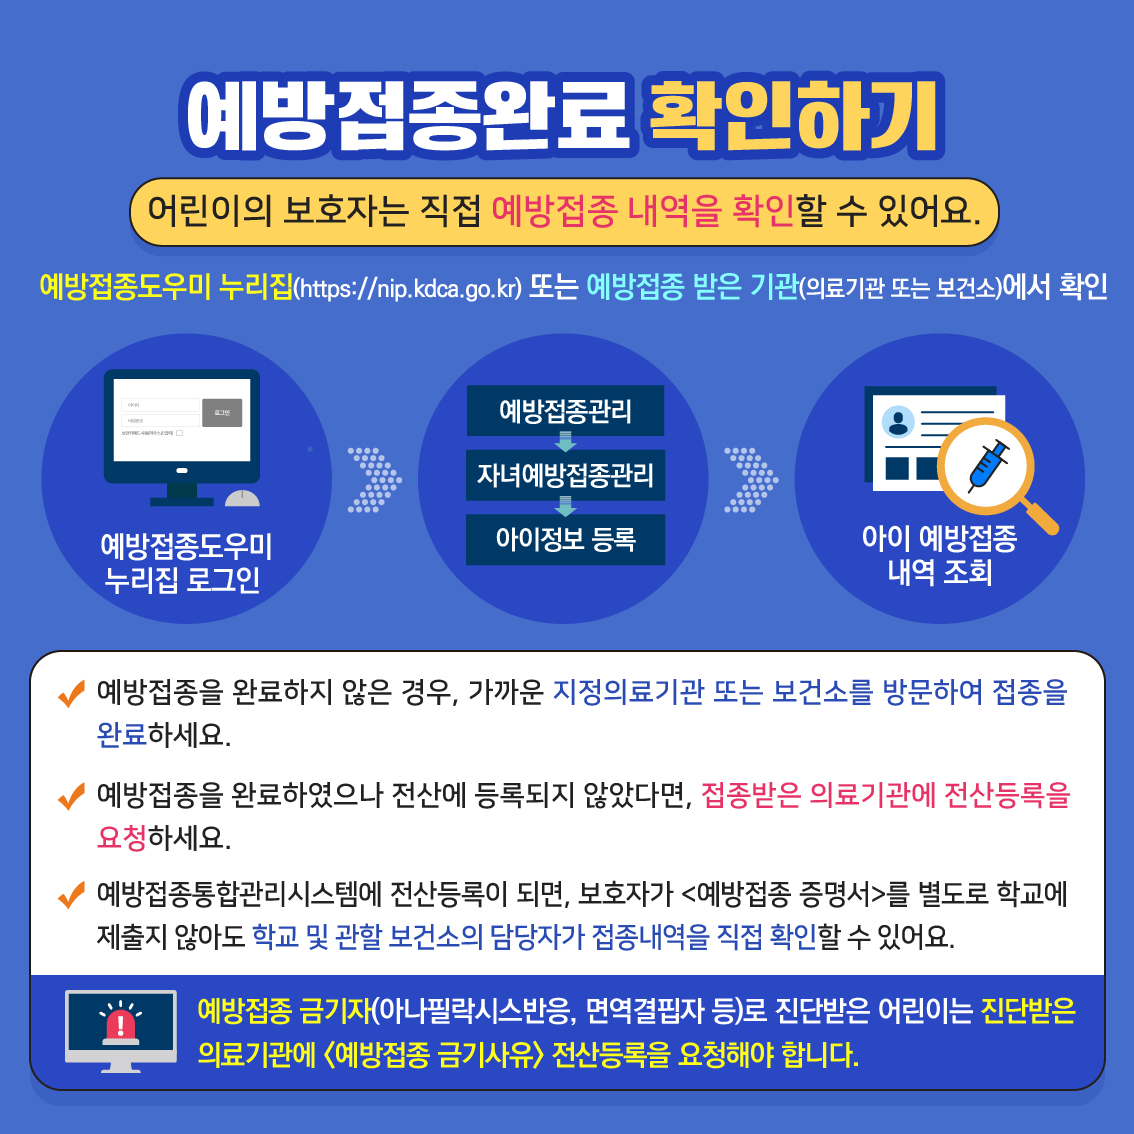 03. 학생 건강증진 정보_제1호(3월)_필수예방접종_페이지뷰5